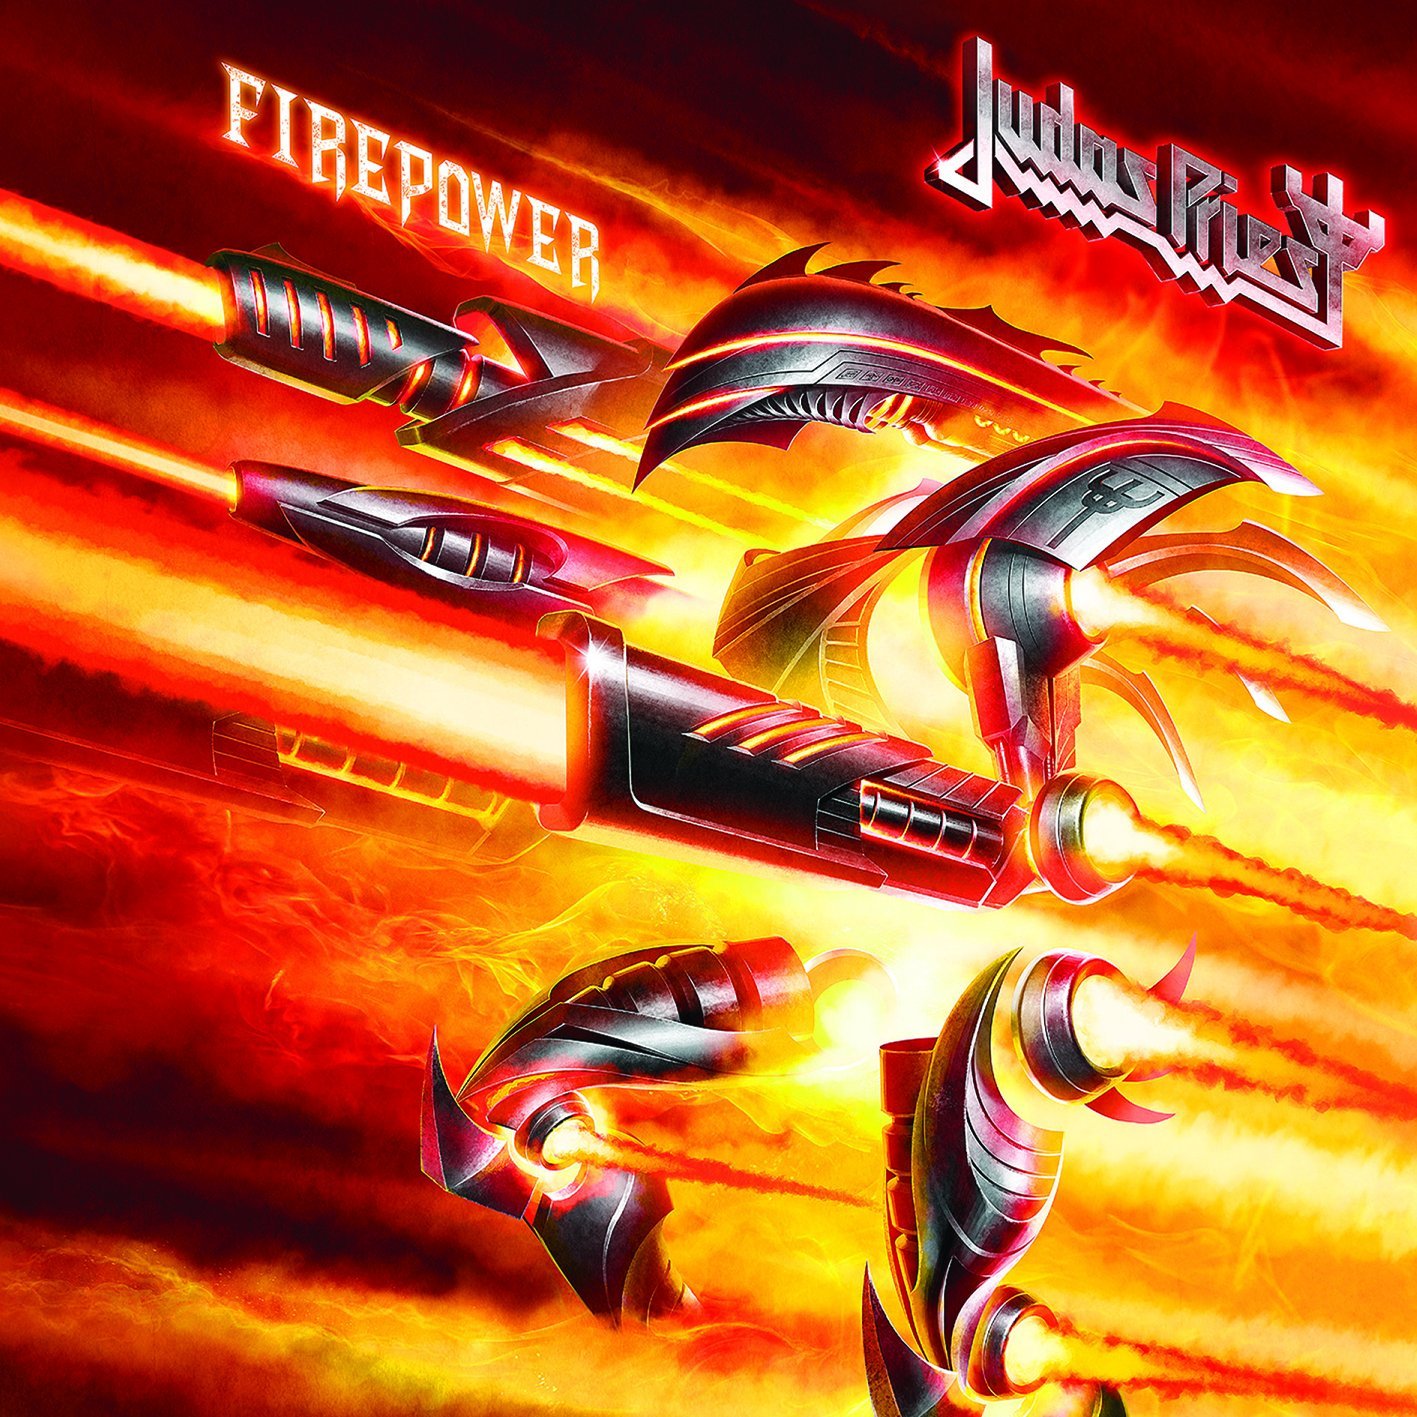 Judas-Priest-FIREPOWER.jpg